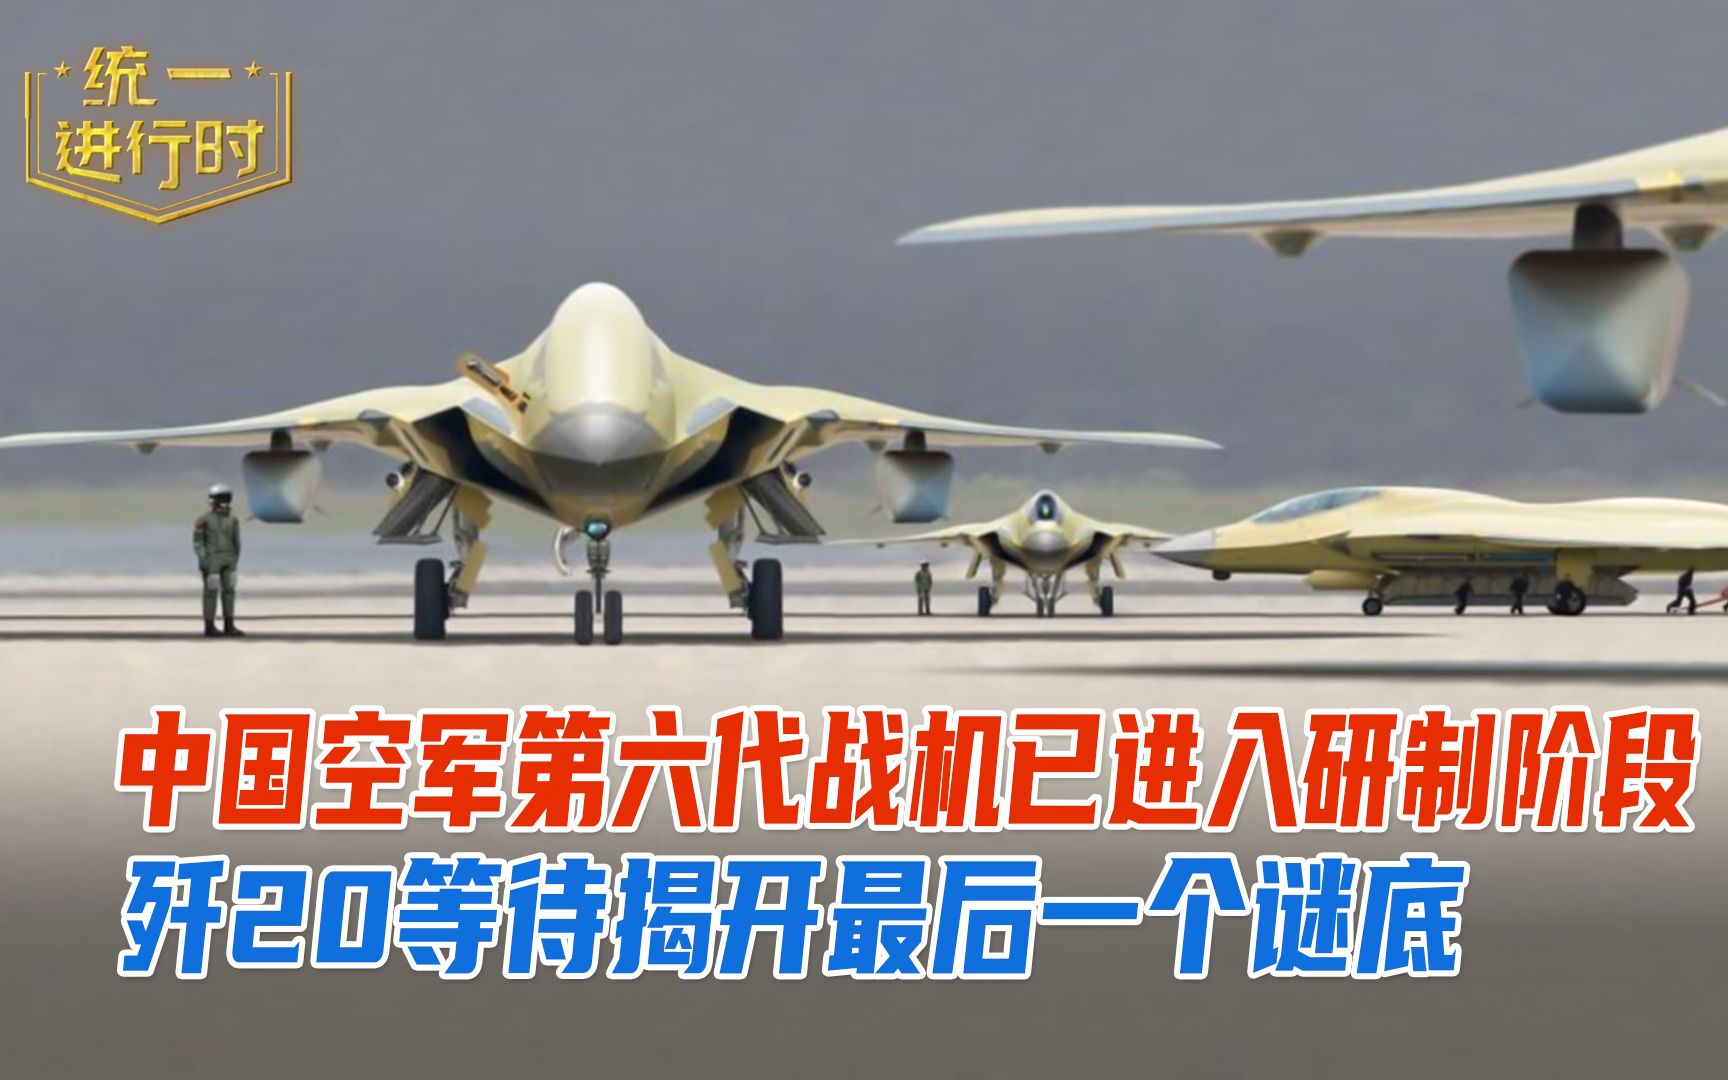 中国空军第六代战机已进入研制阶段,歼20等待揭开最后一个谜底